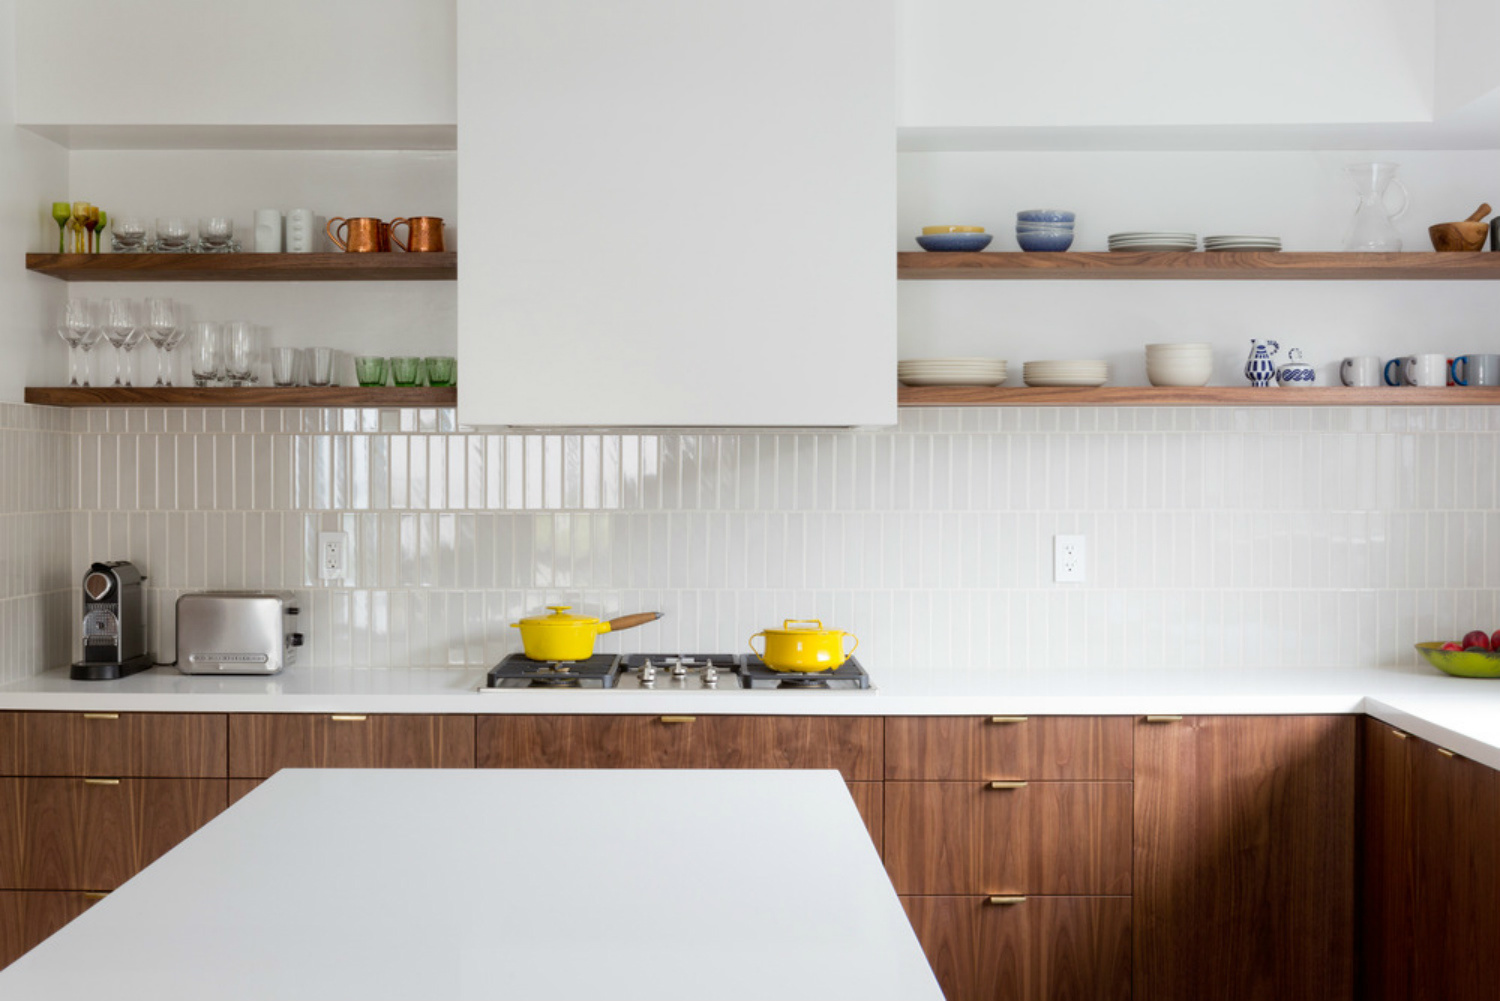 Nếu yêu phong cách tối giản, bạn có thể học hỏi cách thiết kế của phòng bếp này khi sử dụng gạch ốp backsplash màu trắng hòa quyện với mặt bàn bếp và màu sơn tường. Sử dụng hệ thống kệ mở bằng gỗ để tăng không gian lưu trữ hiệu quả.